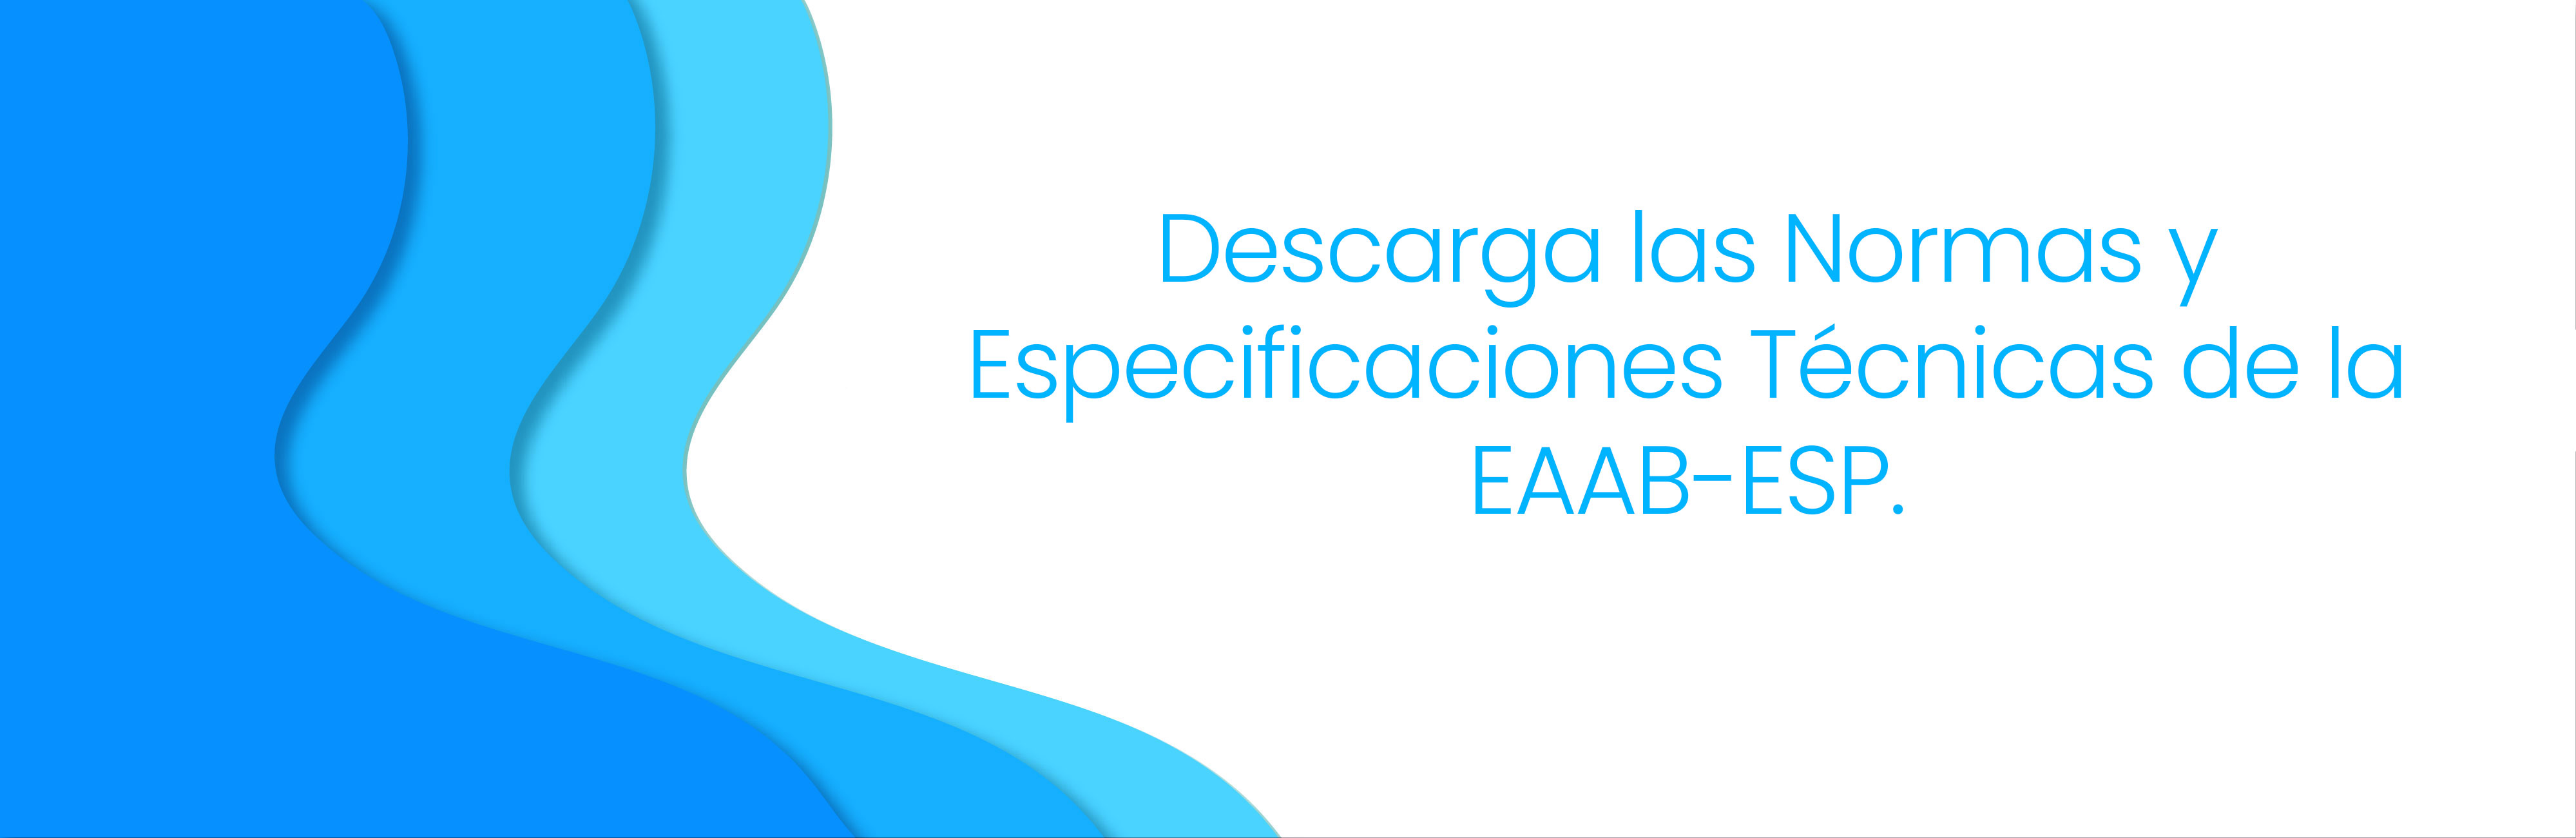 Descarga las Normas y Especificaciones Técnicas de la EAAB-ESP.